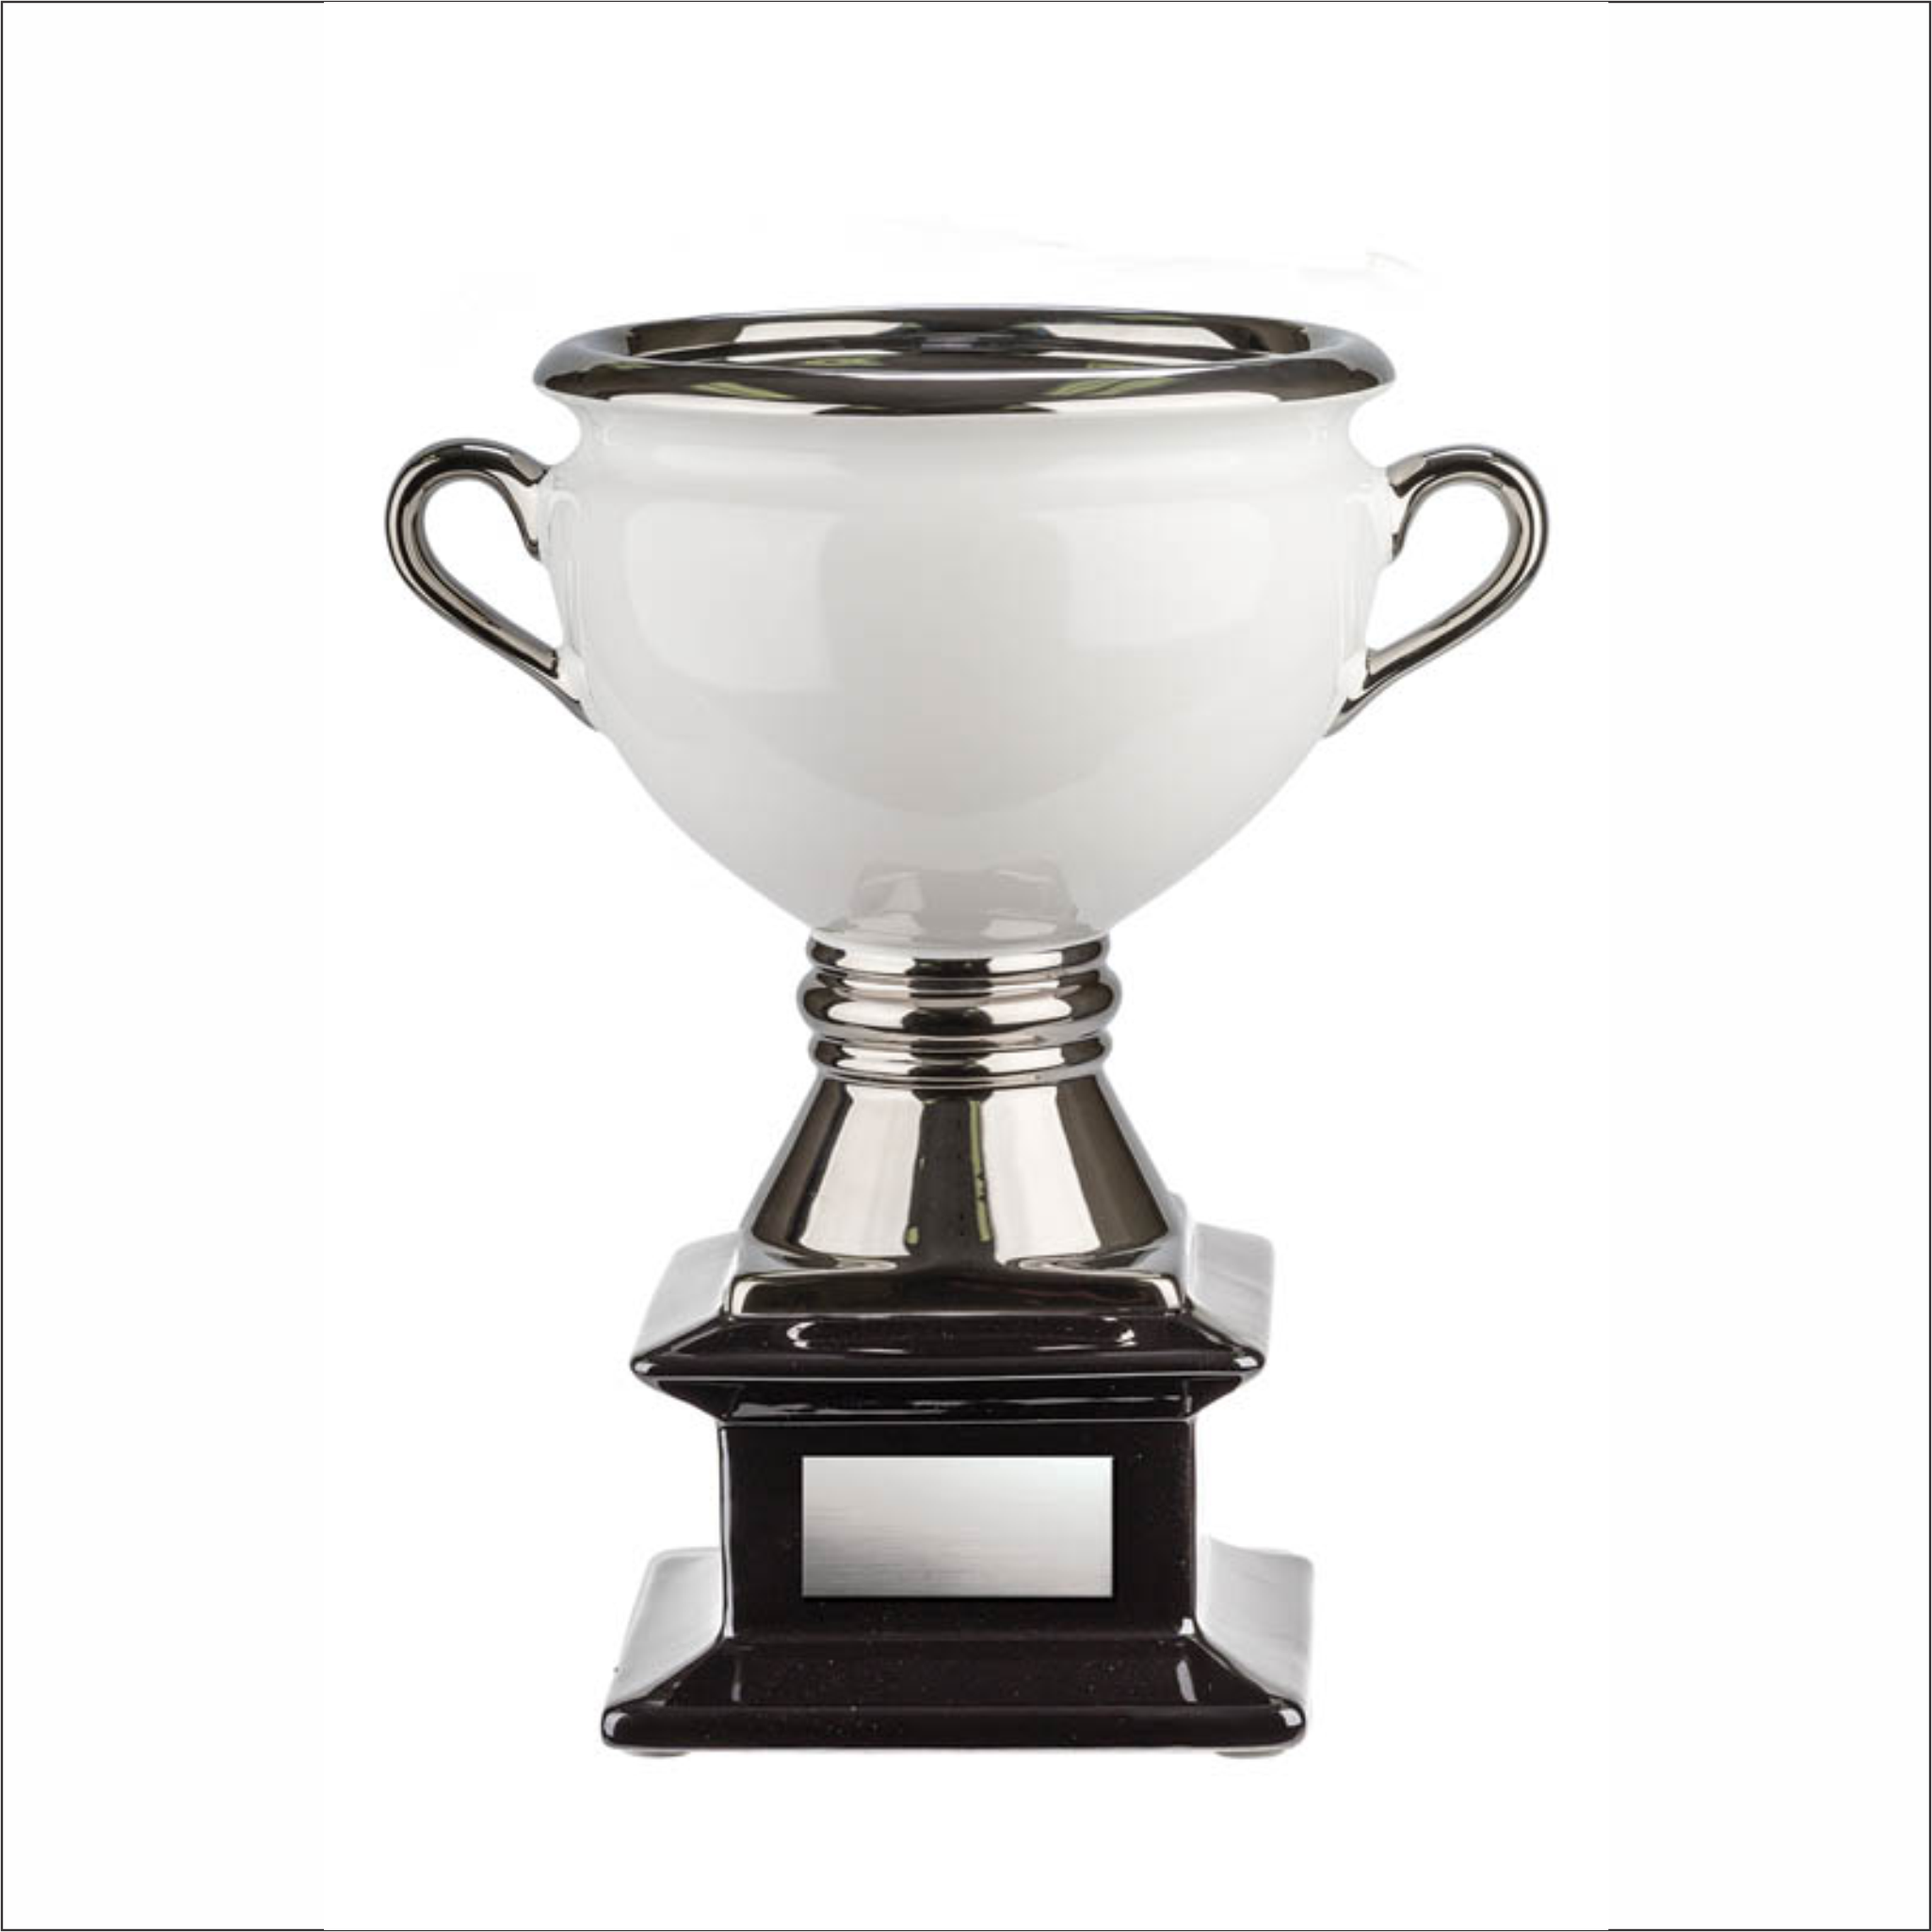 Ceramic Cup - White/Silver Handles - Contempo series